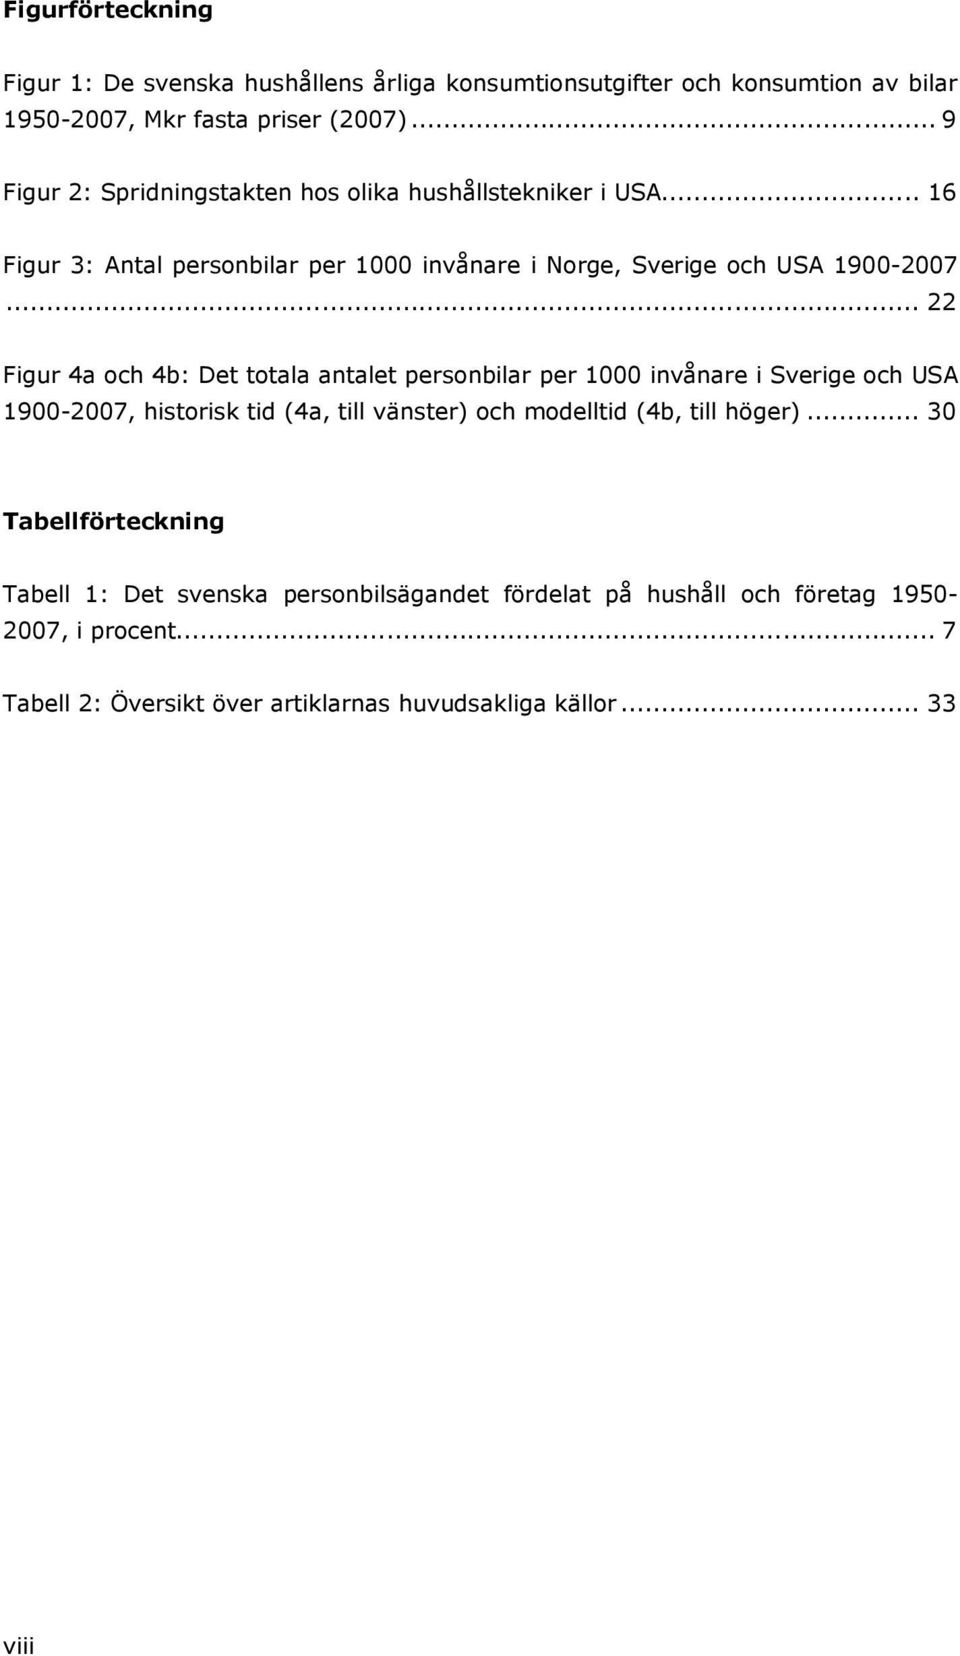 .. 22 Figur 4a och 4b: Det totala antalet personbilar per 1000 invånare i Sverige och USA 1900-2007, historisk tid (4a, till vänster) och modelltid (4b, till